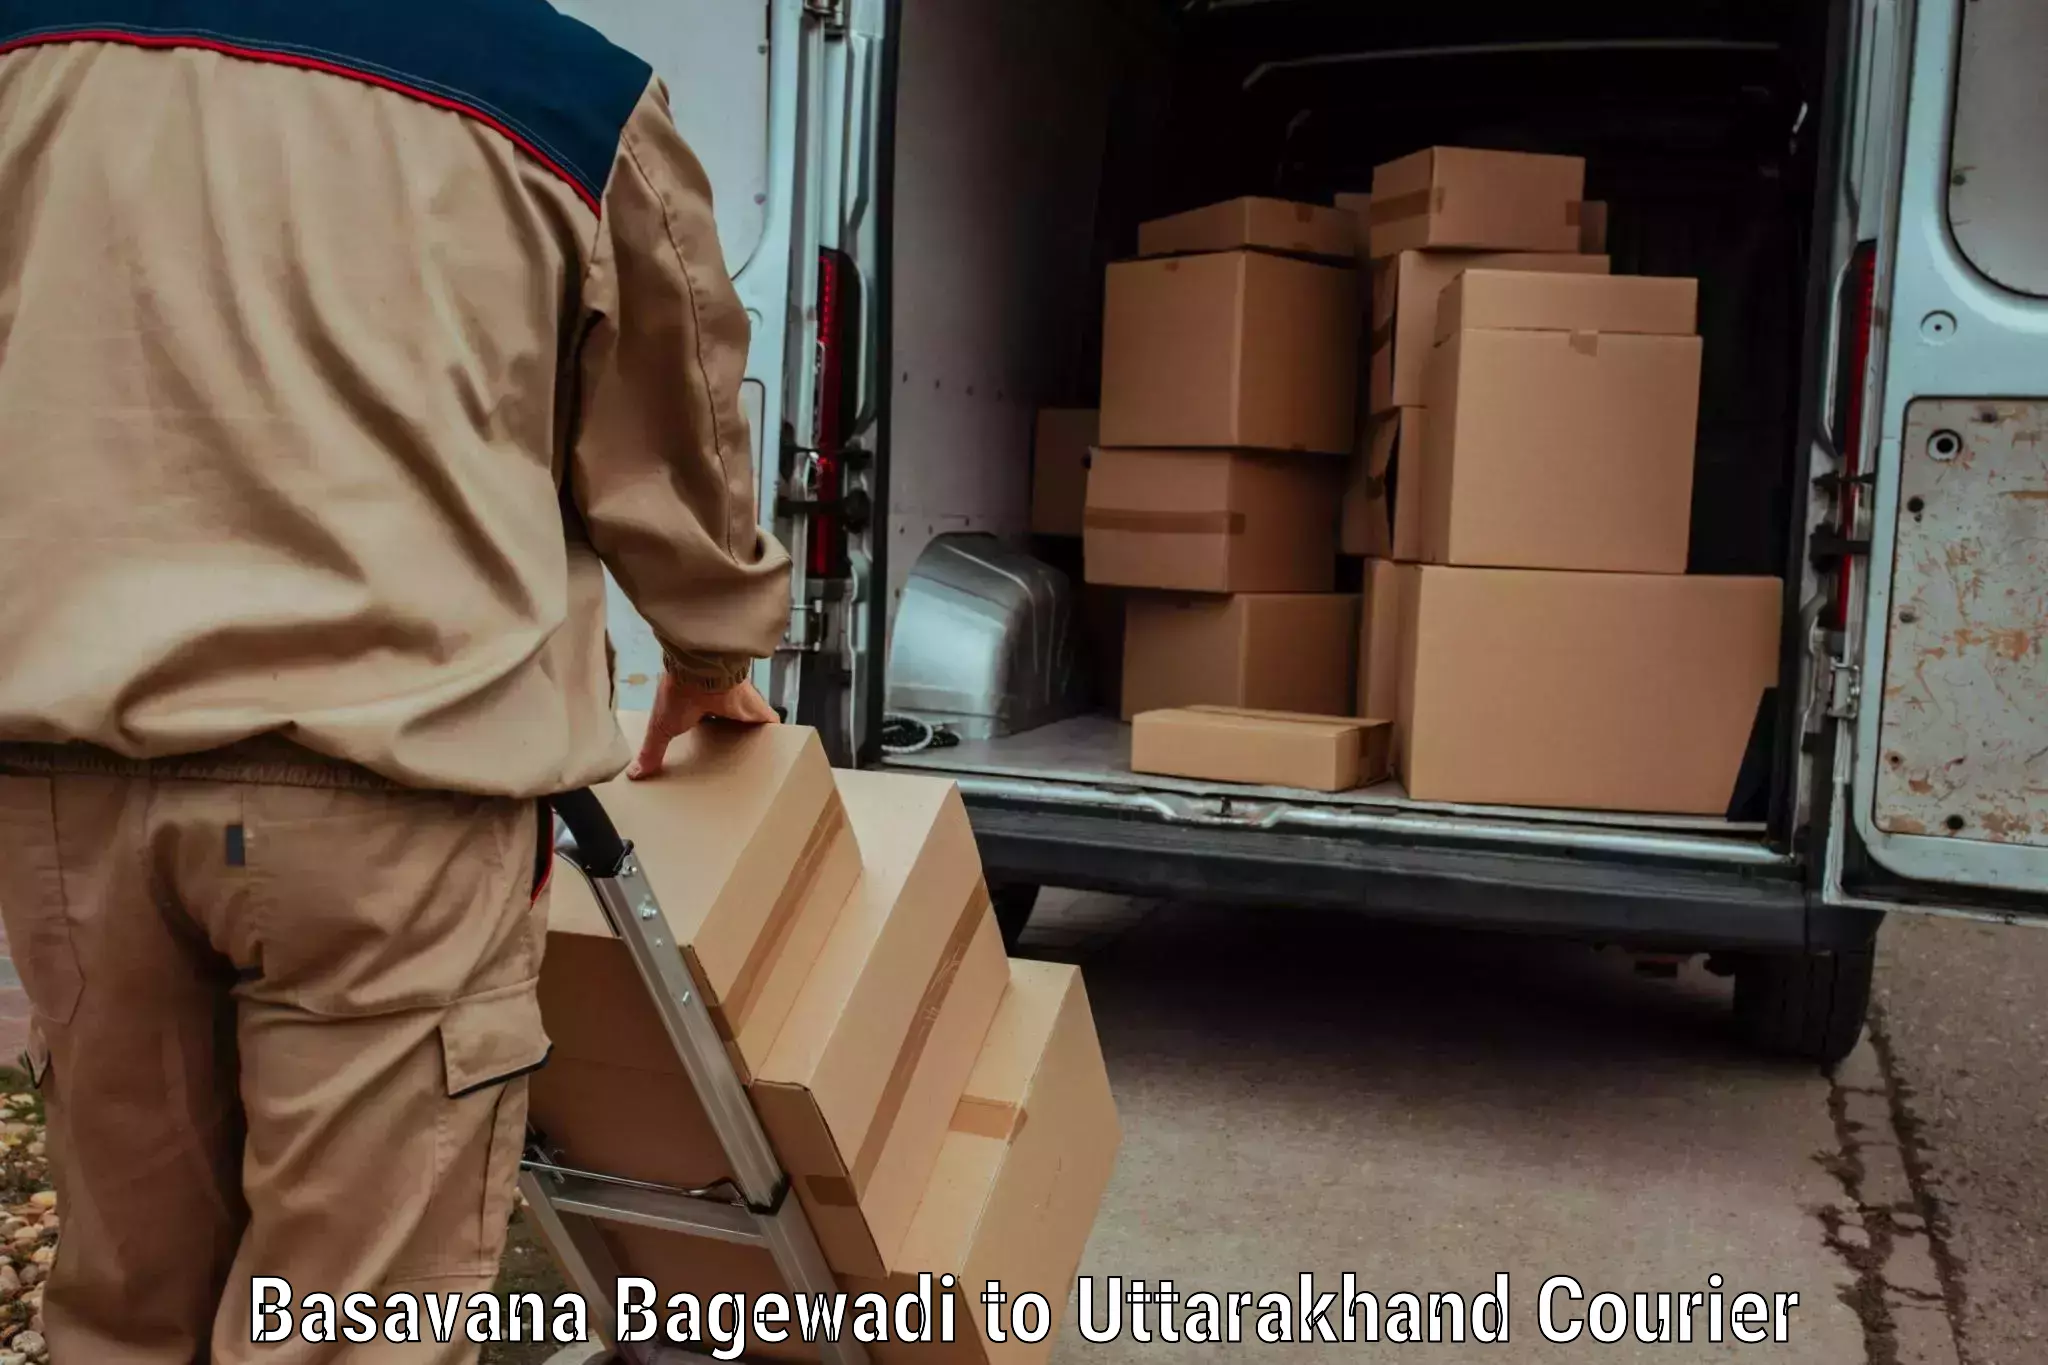 Efficient parcel service Basavana Bagewadi to Rishikesh